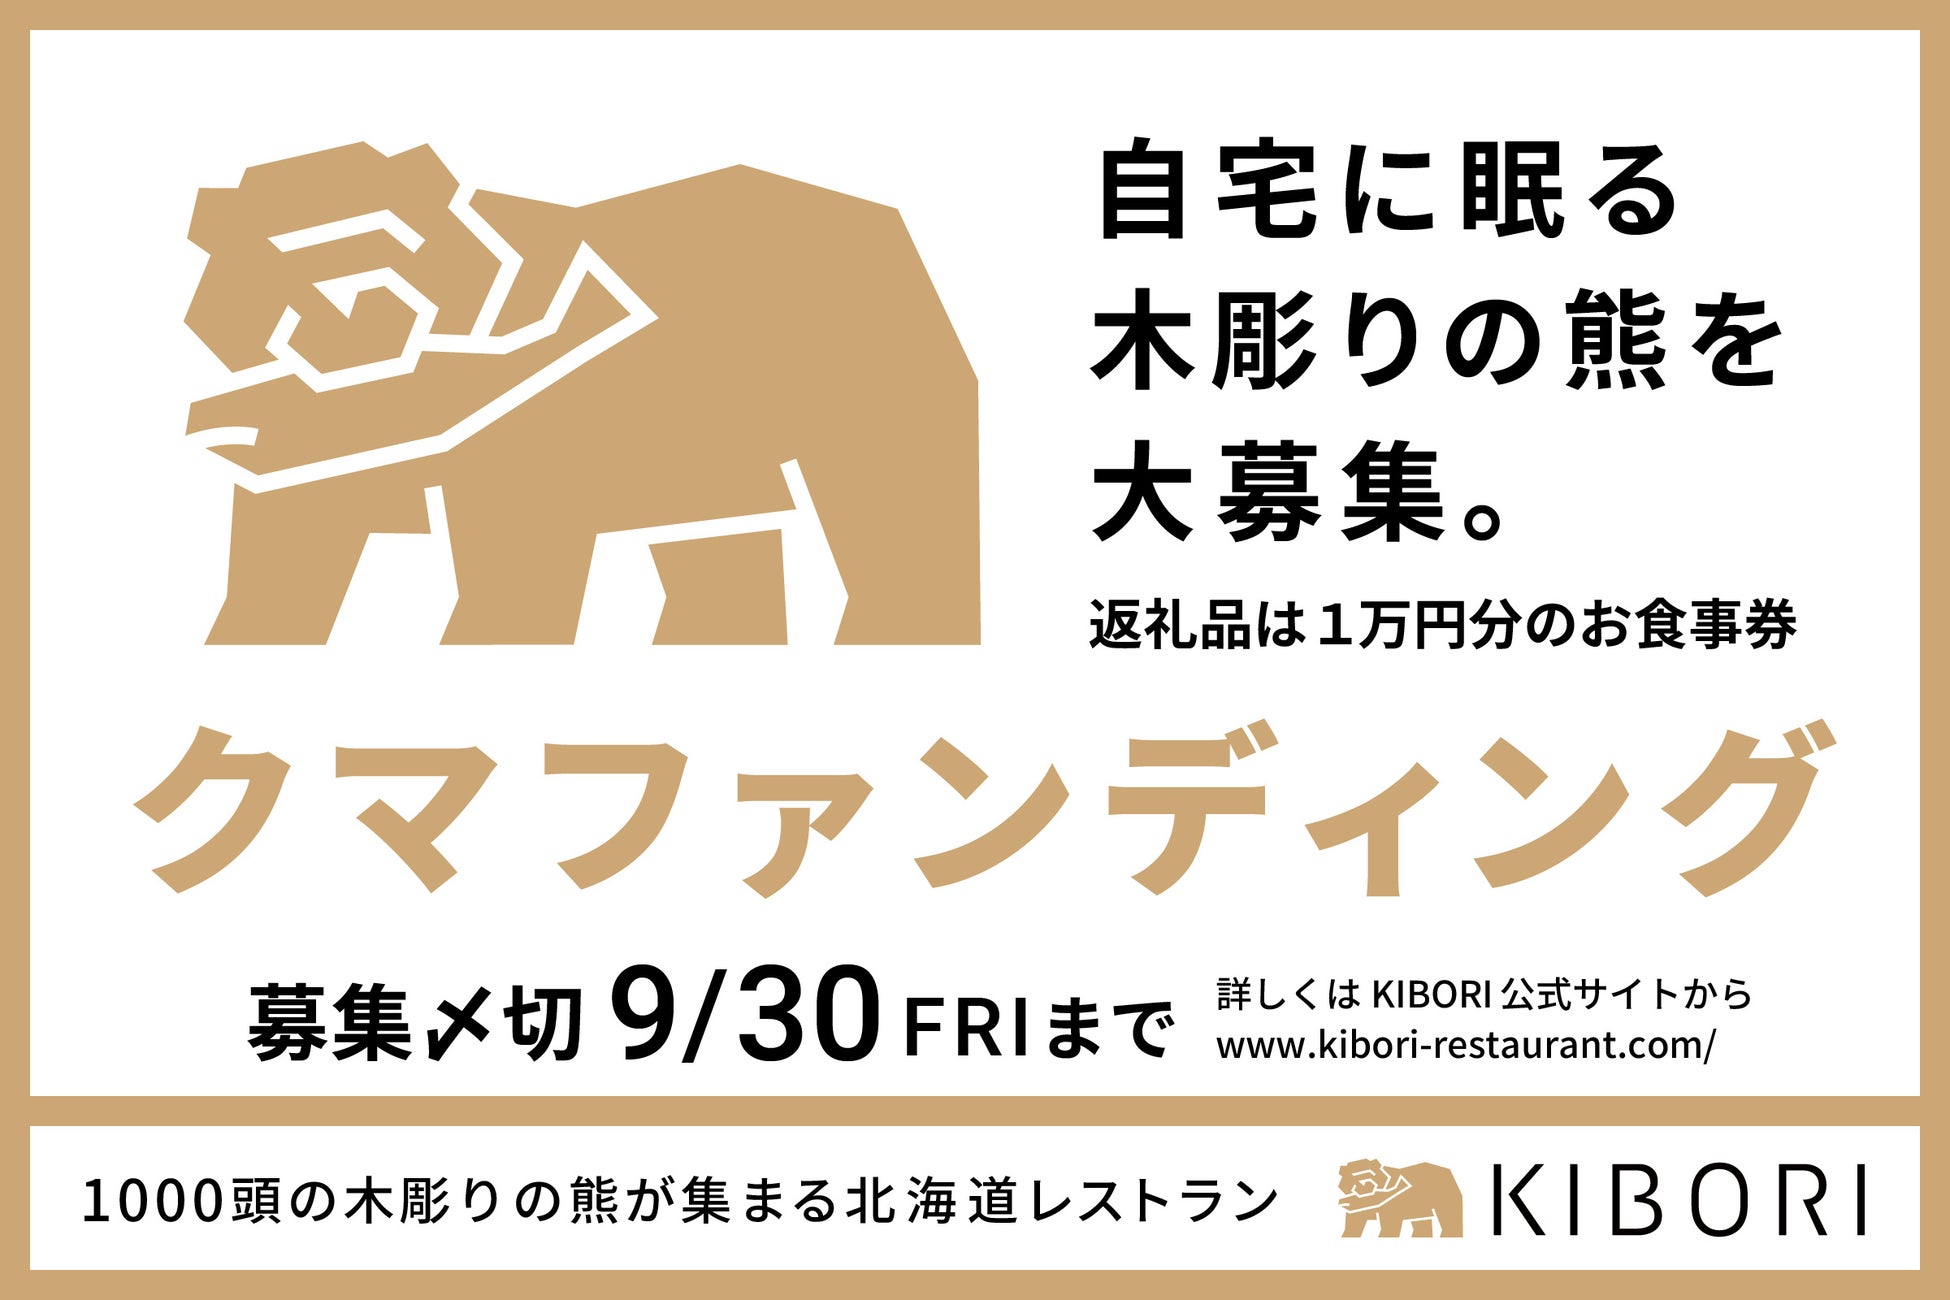 1000頭の「木彫りの熊」が集まる北海道レストラン「KIBORI（キボリ）」2022年11月下旬 新宿にオープン！ 食のエンターテイメントを国内外へ発信する新業態のサブ画像3